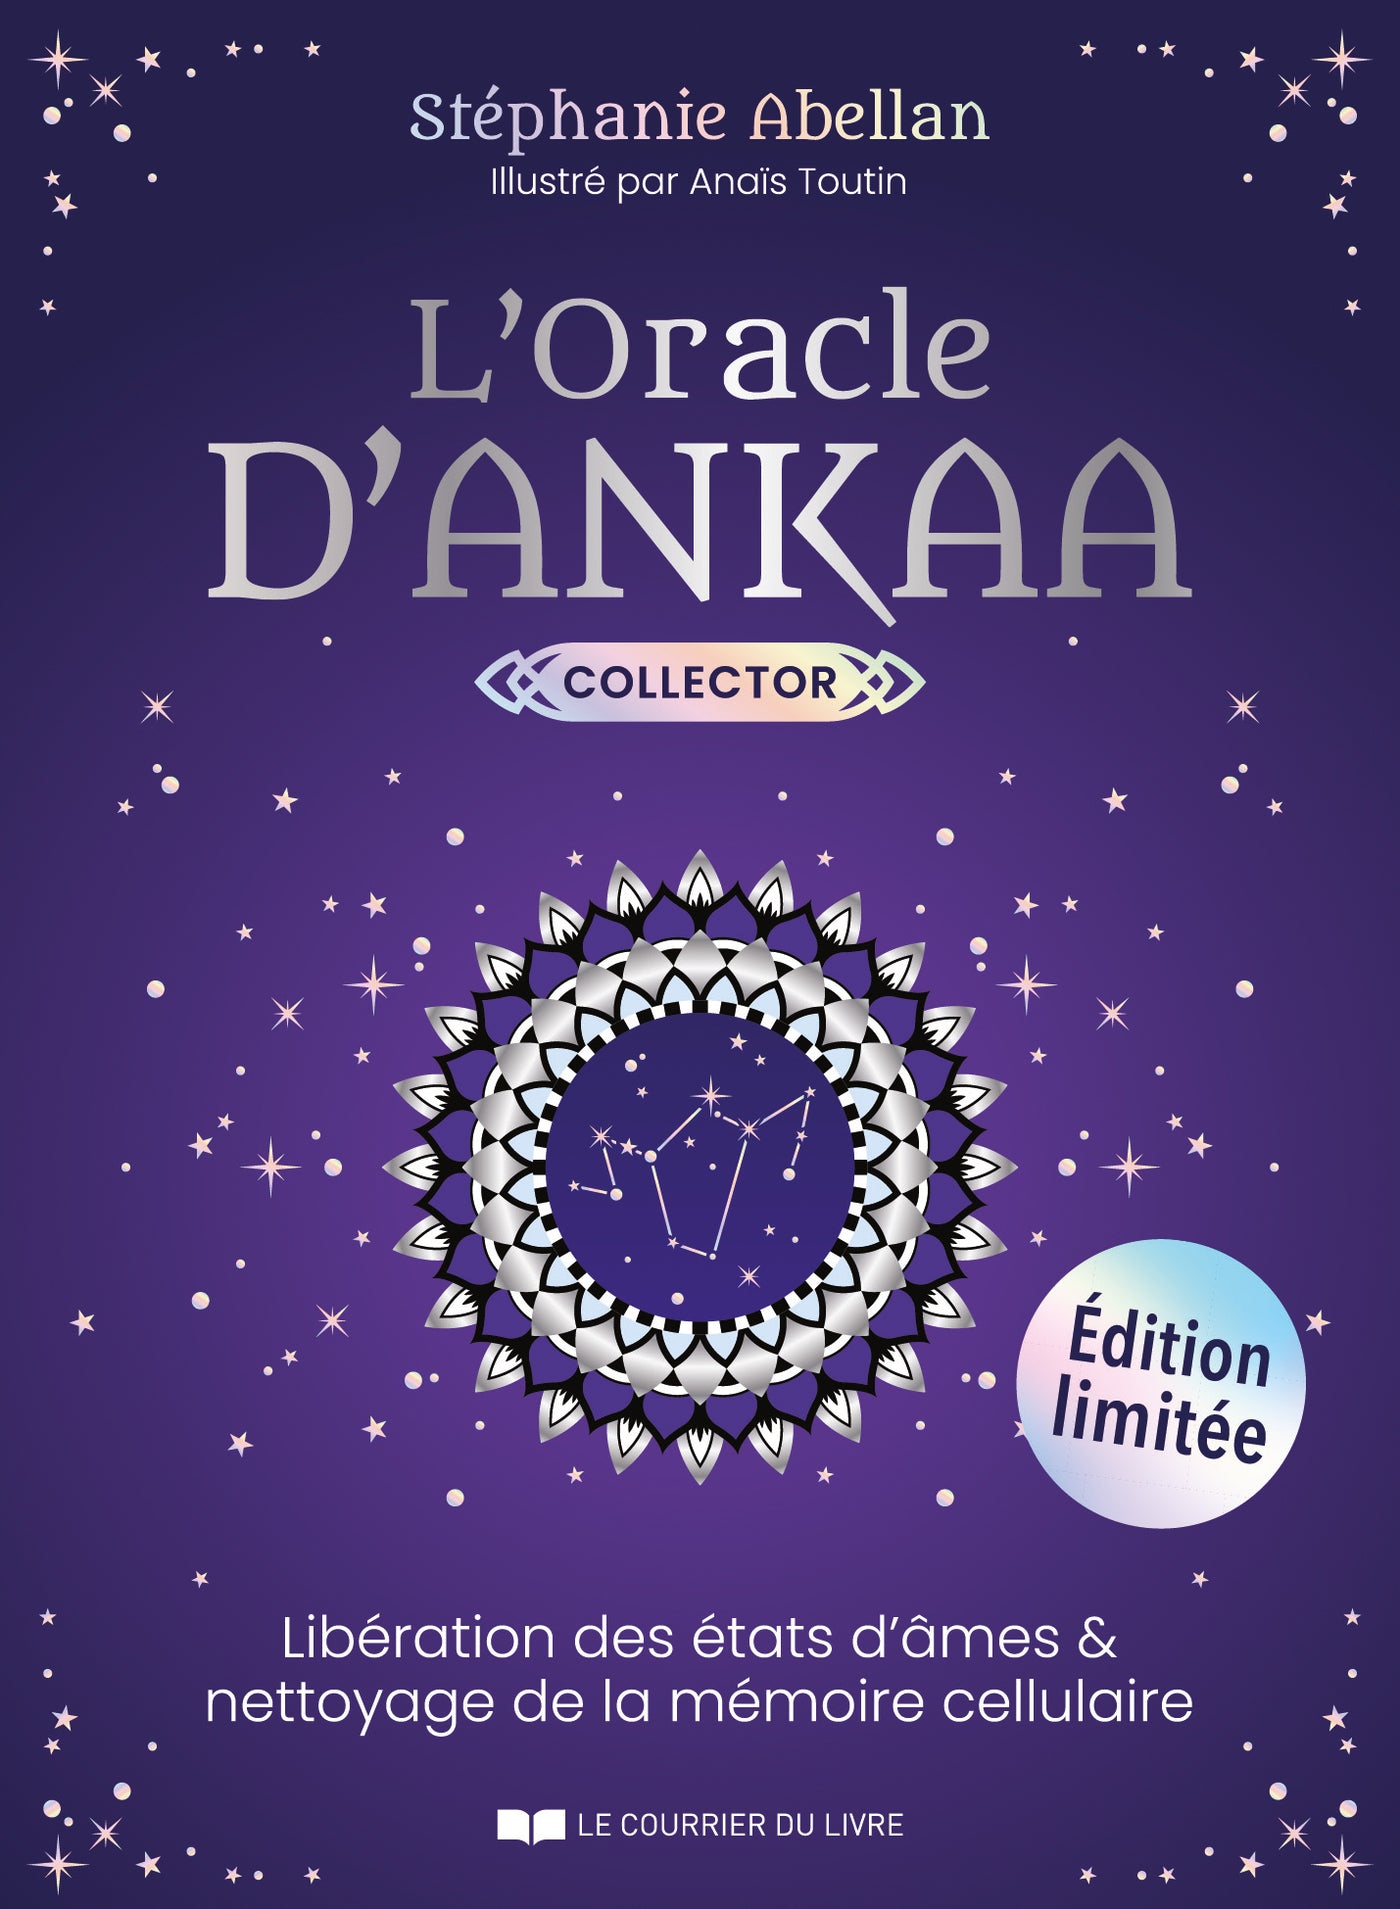 The Oracle of Ankaa Collector – Les Médéores d'Ankaa